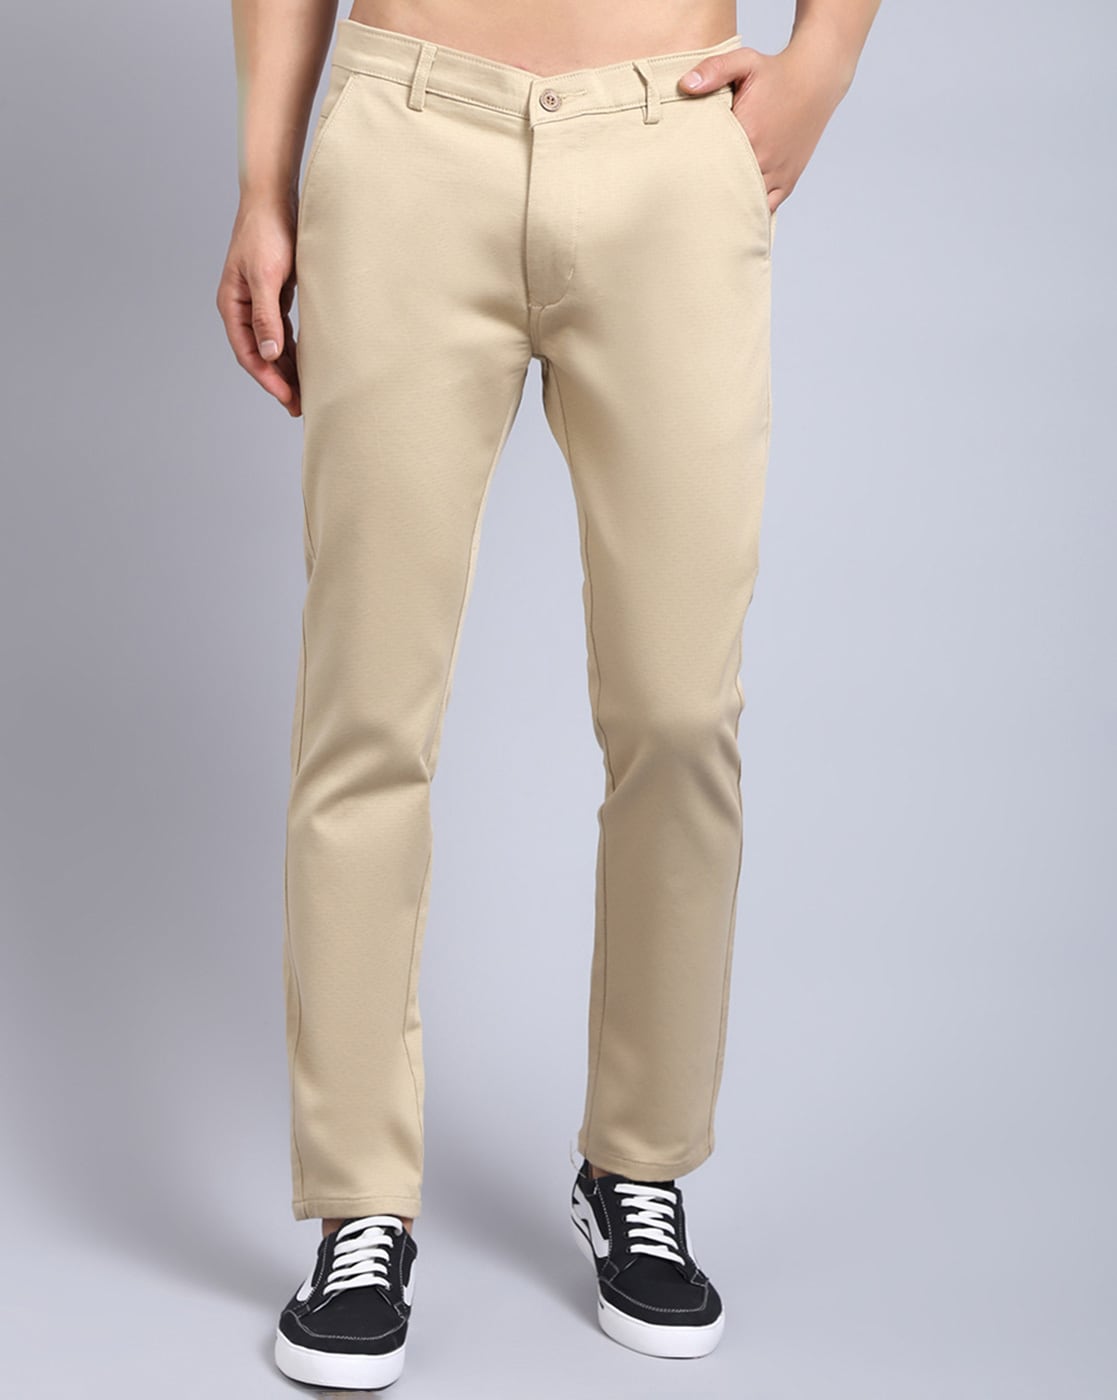 Grey Speckled Merino Wool Blend Pants